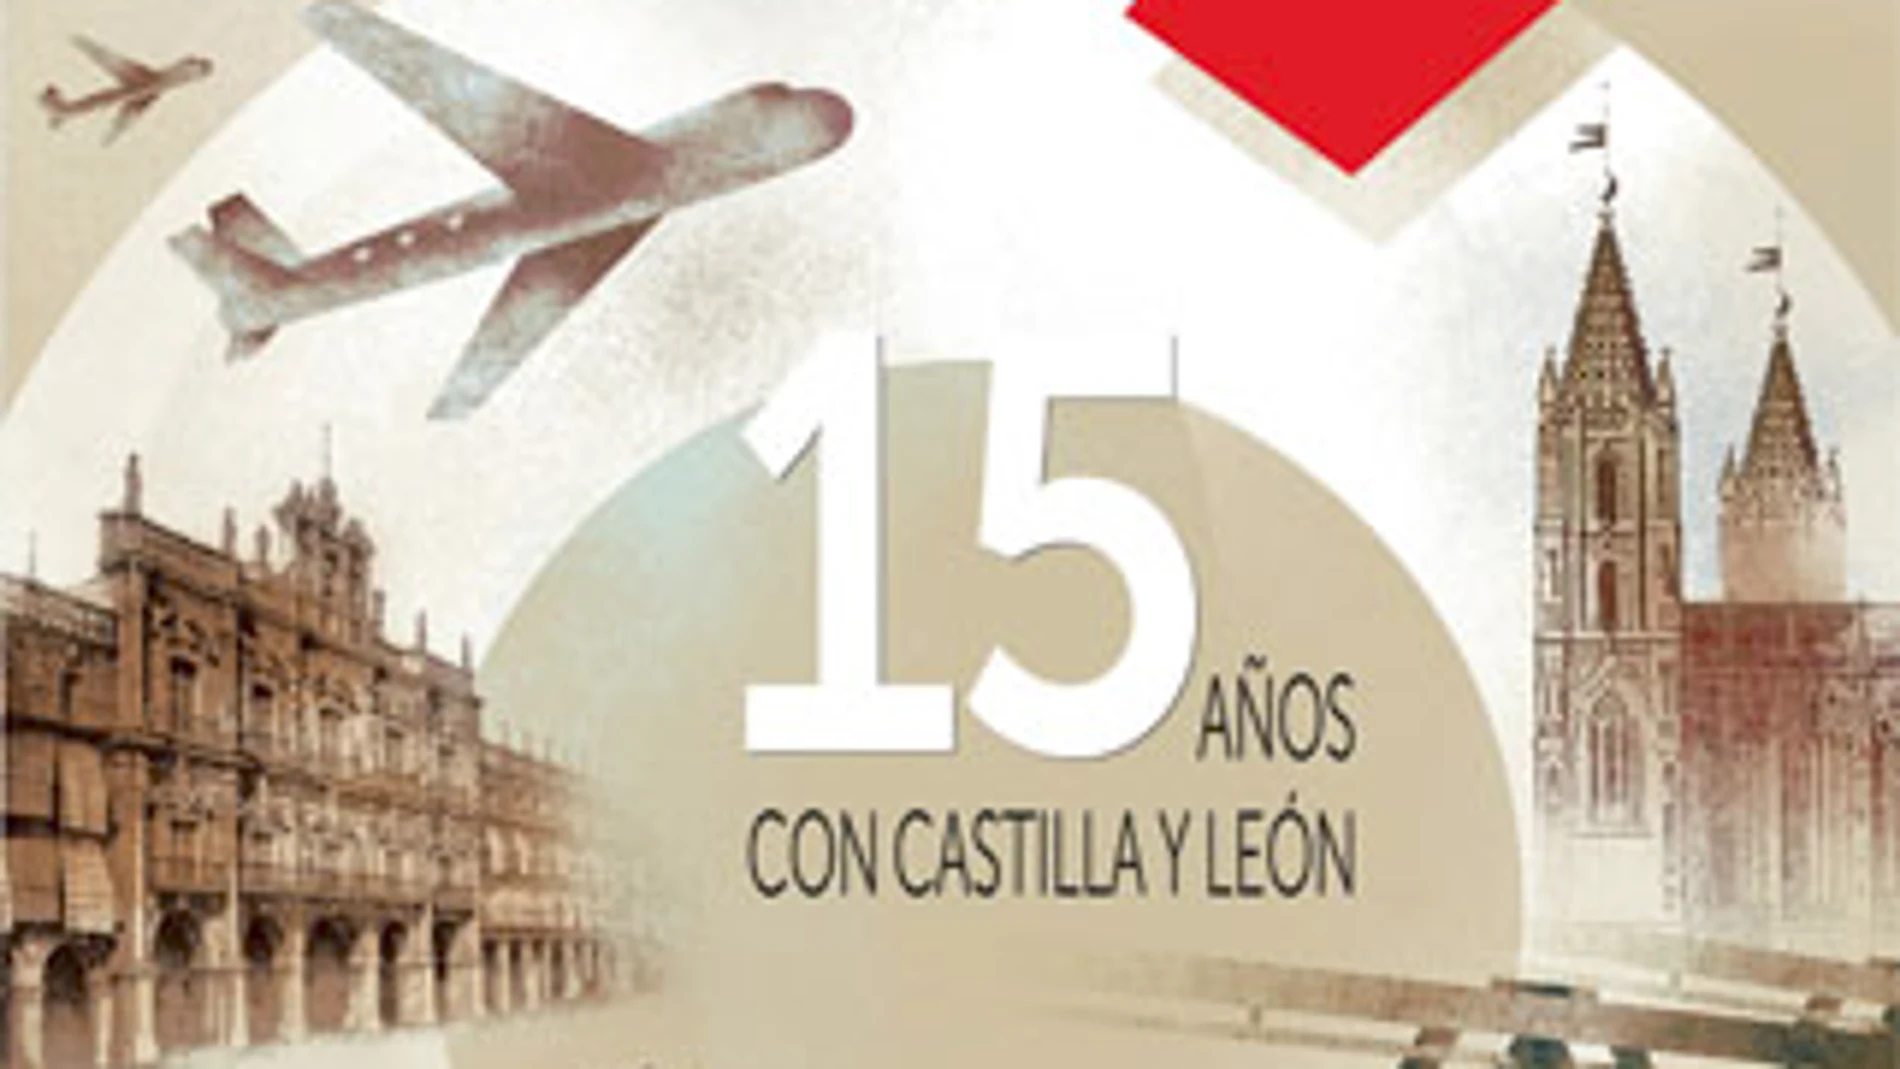 15 Años con Castilla y León